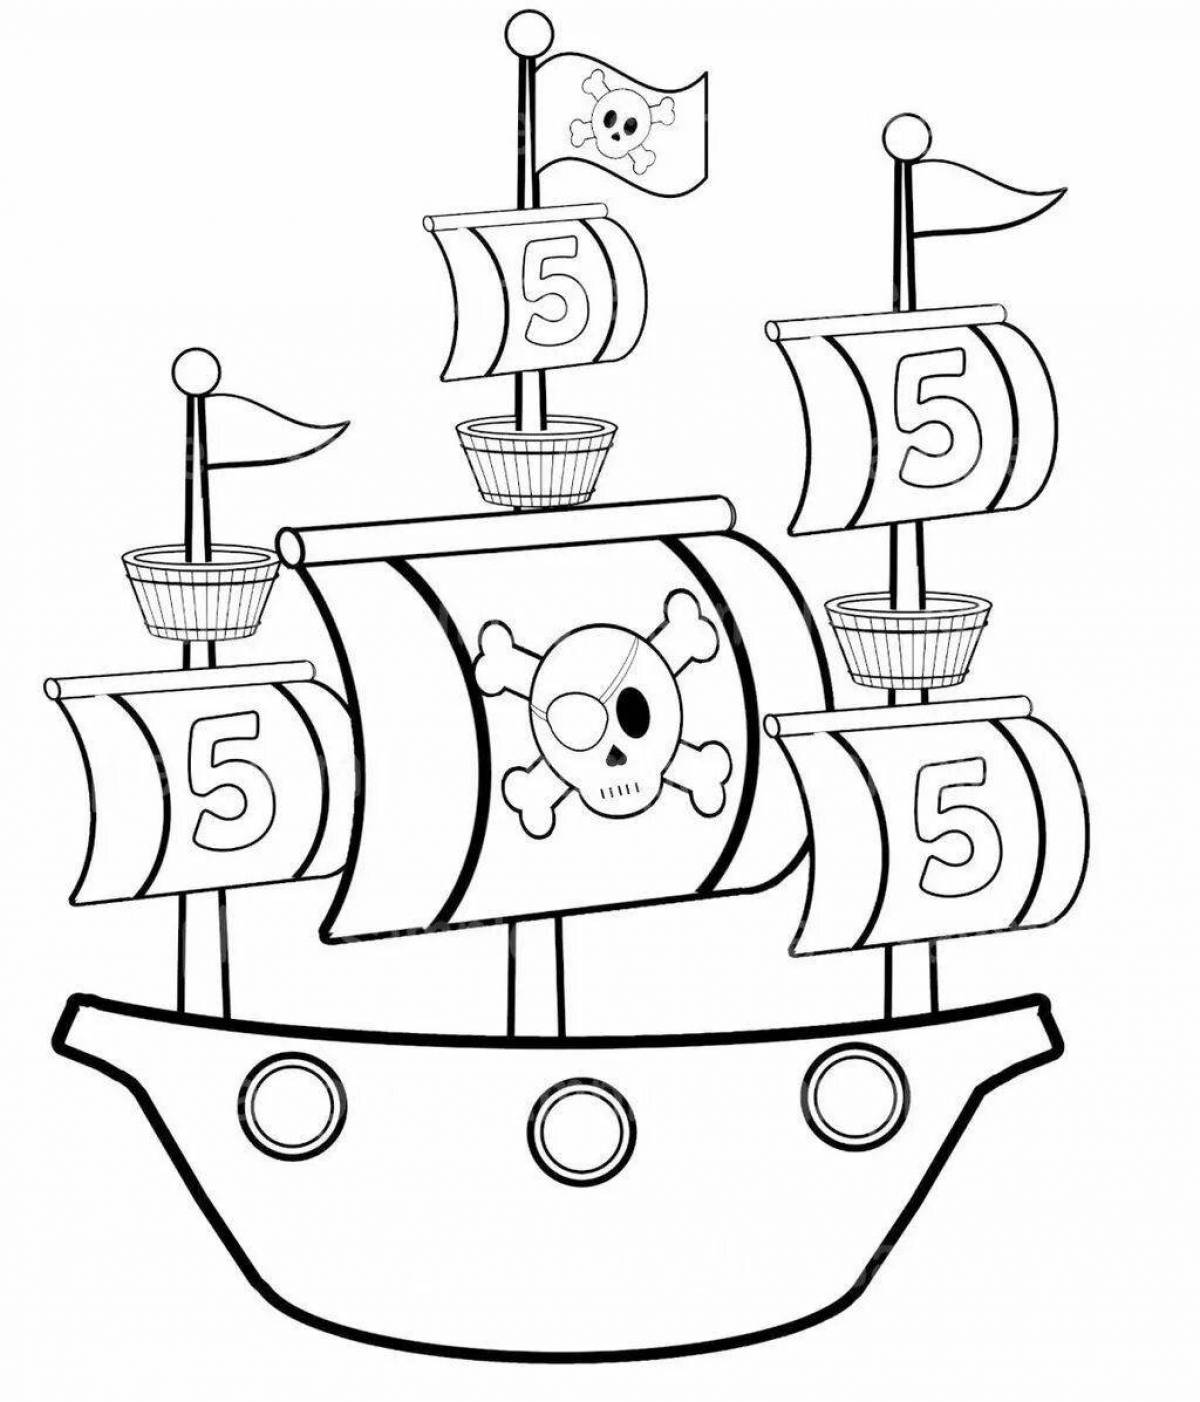 Очаровательная раскраска пиратского корабля для детей